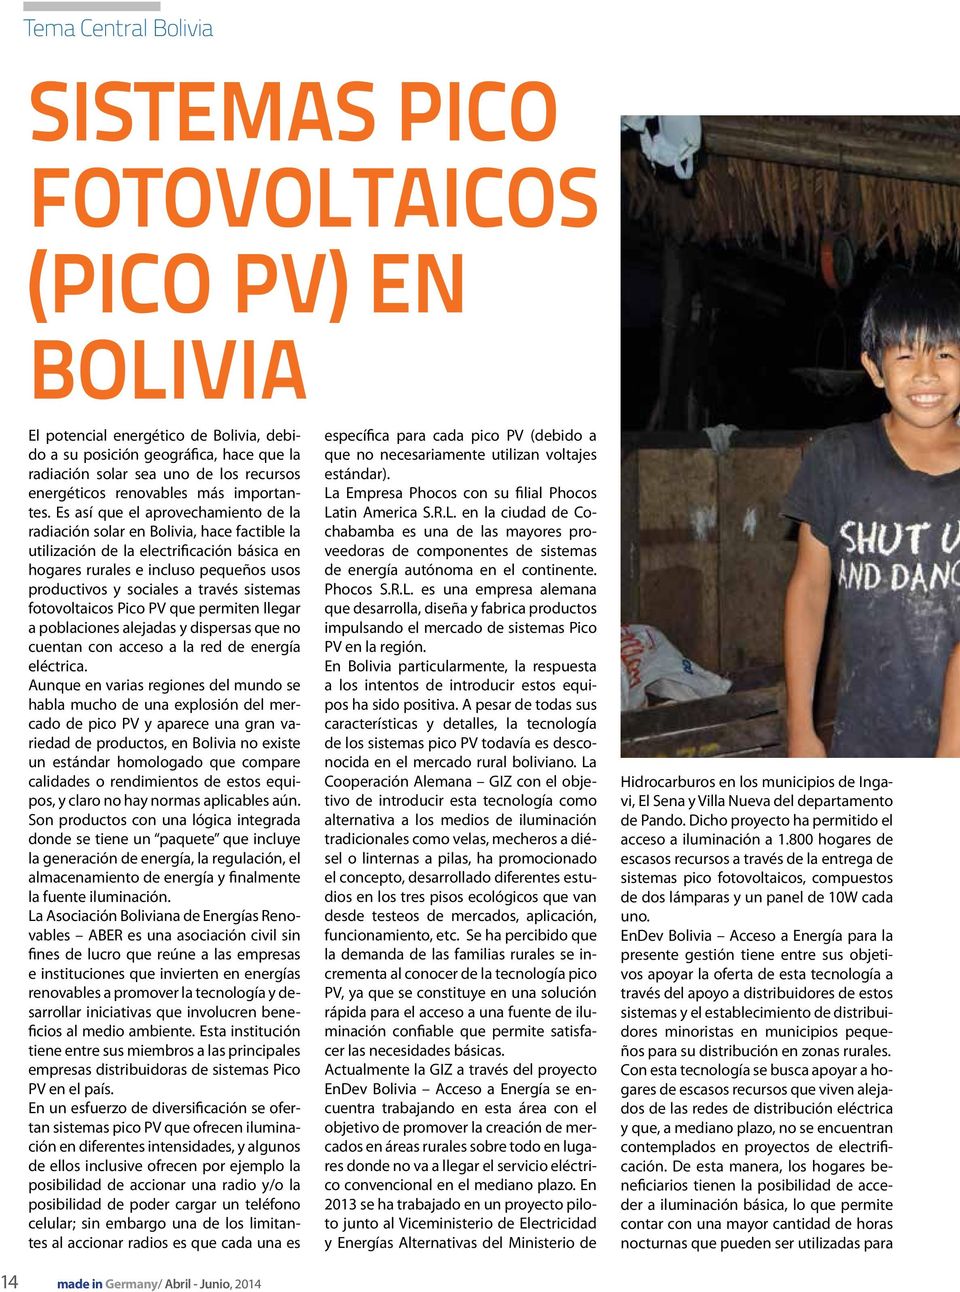 Es así que el aprovechamiento de la radiación solar en Bolivia, hace factible la utilización de la electrificación básica en hogares rurales e incluso pequeños usos productivos y sociales a través